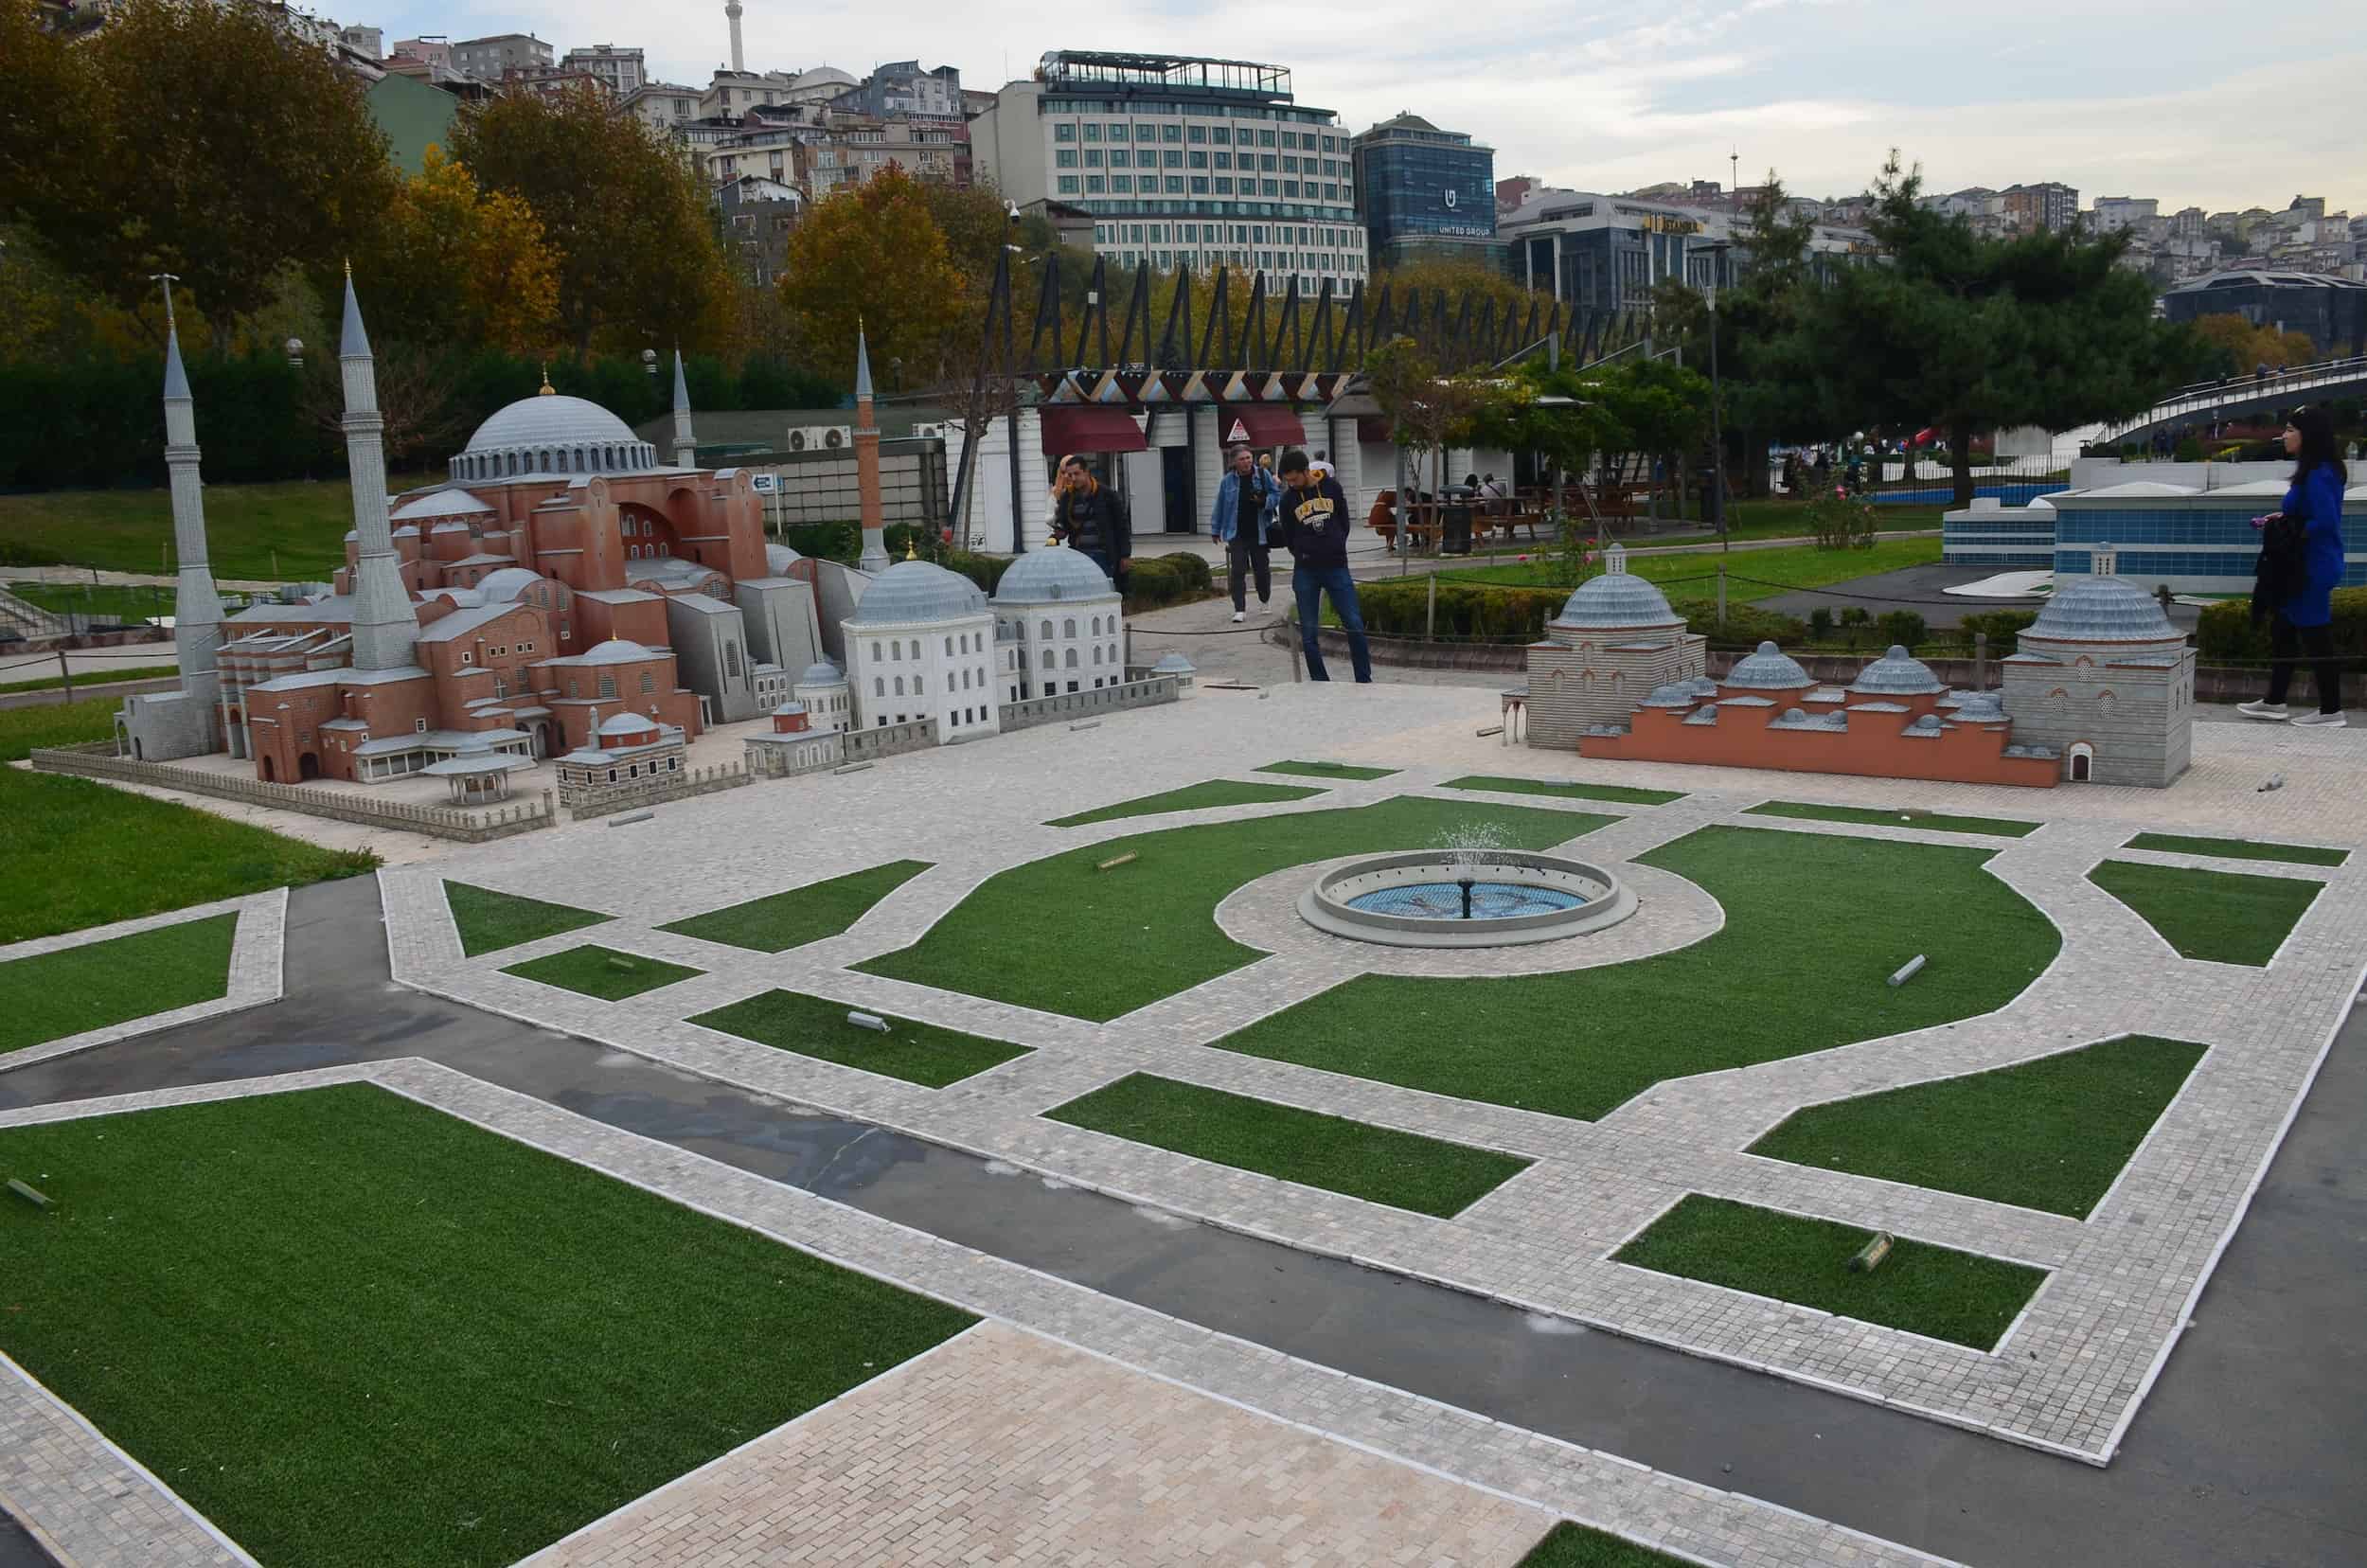 Model of Sultanahmet Square